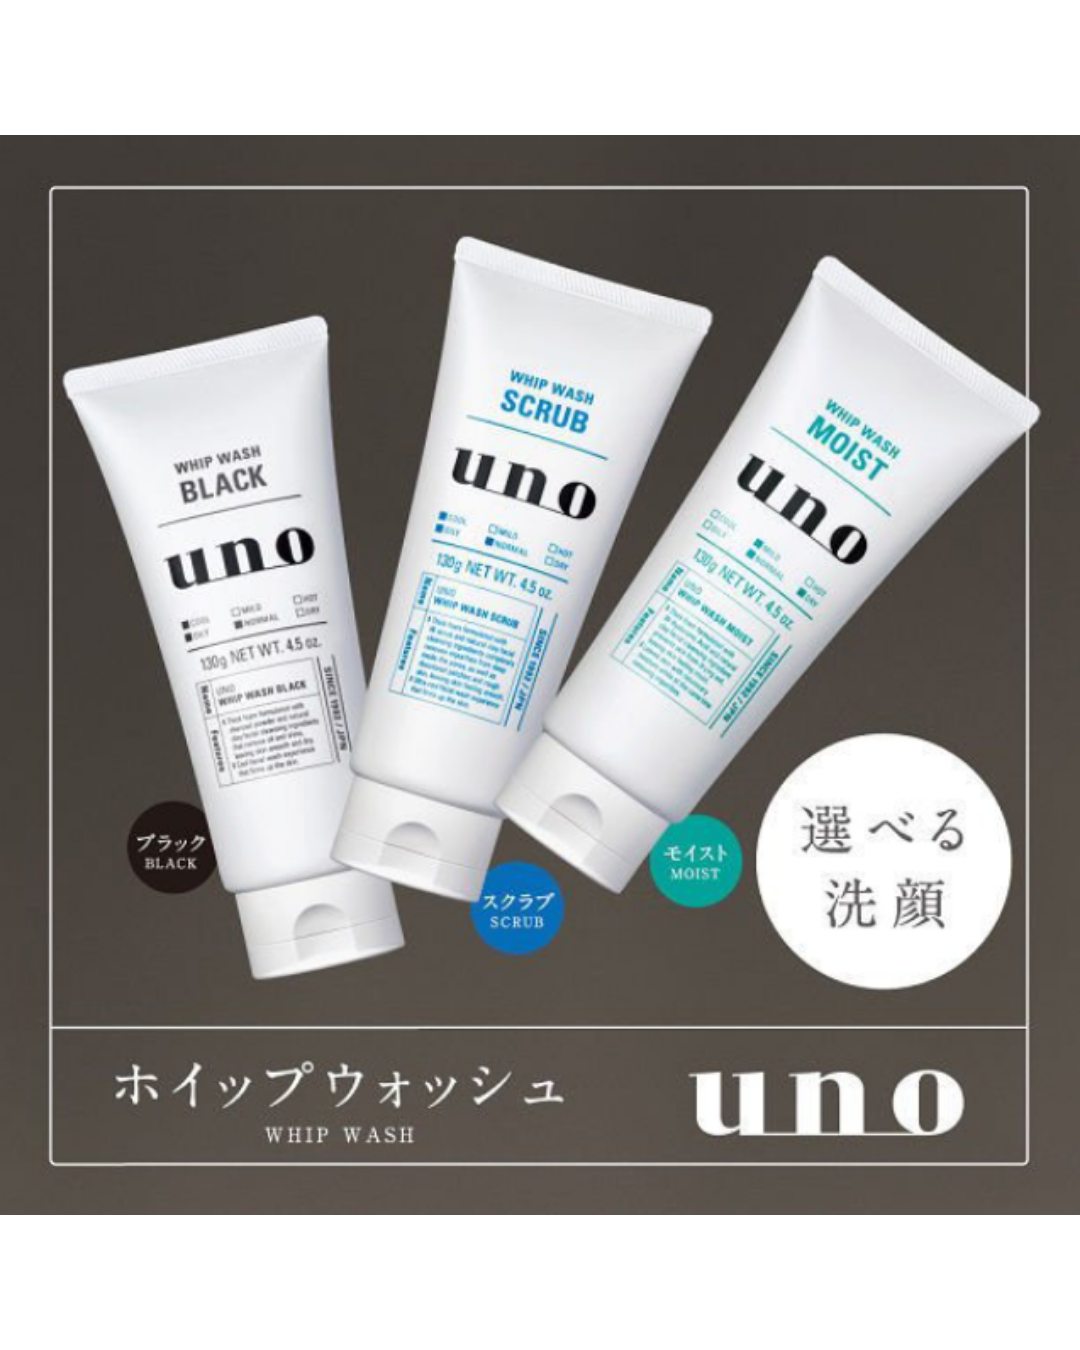 Shiseido UNO Whip Wash - Unique Bunny